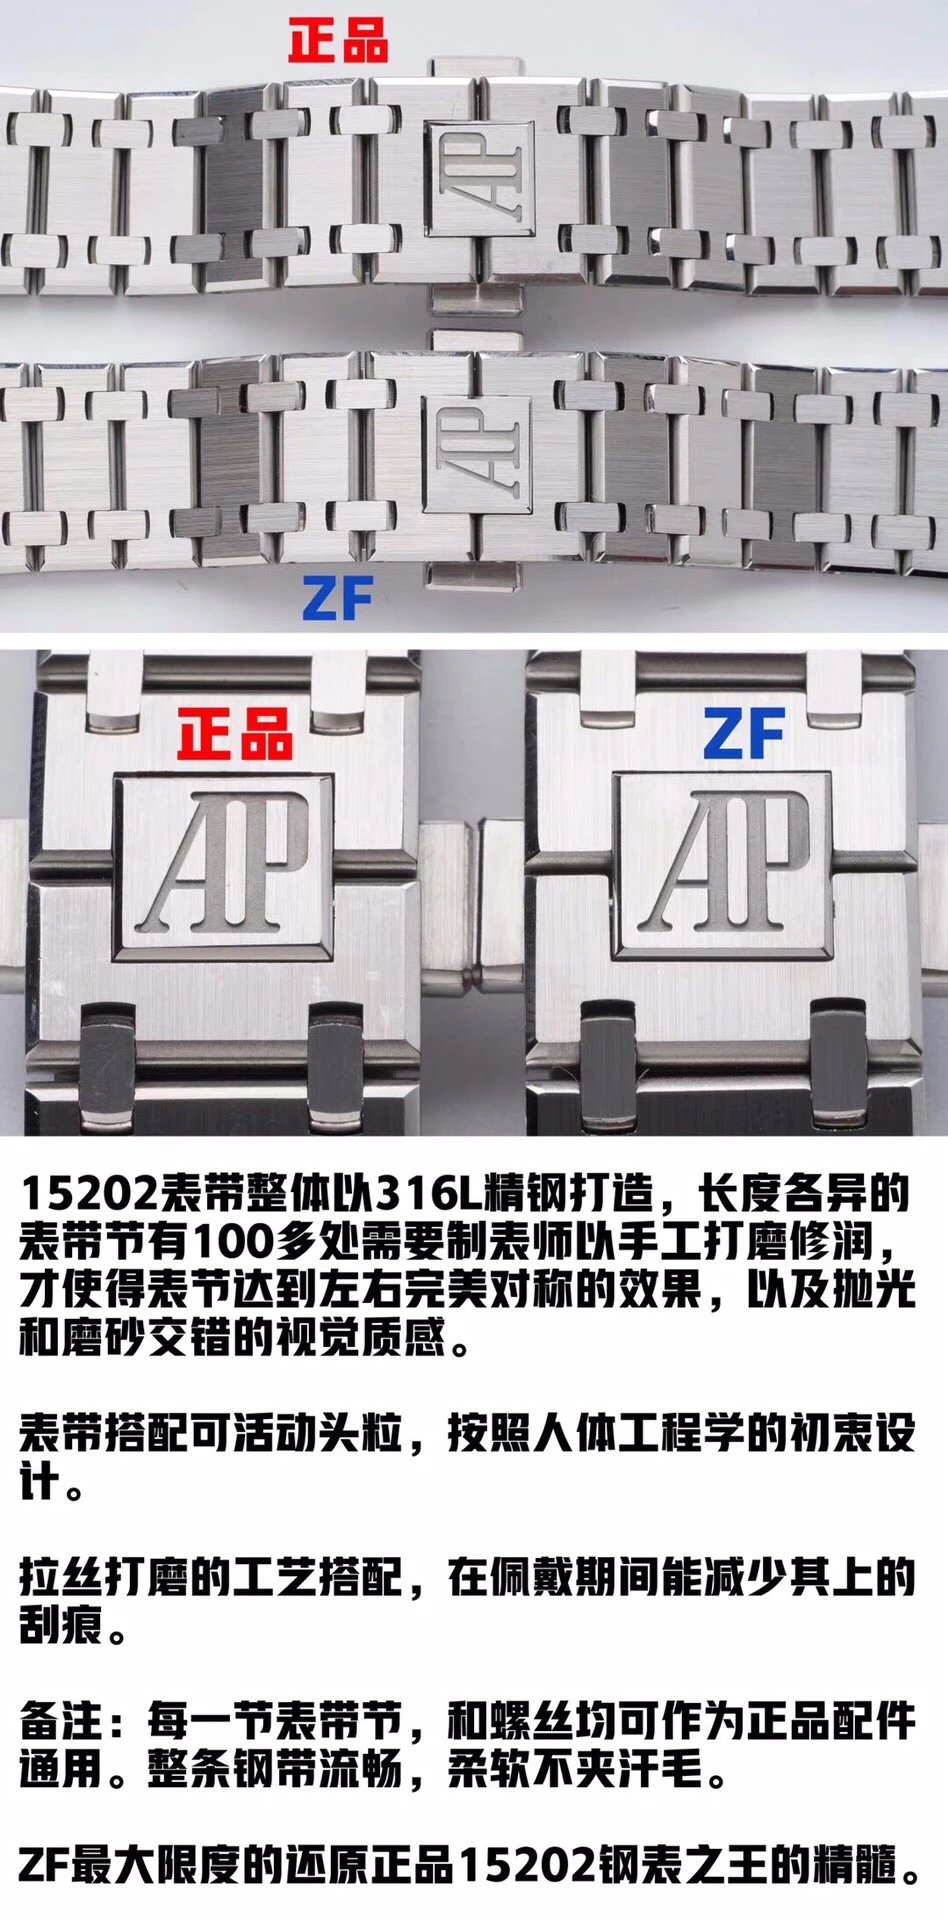 ZF爱bi皇家橡树15202，39×8.6mm，9015机芯的定制版Cal.2121机芯。男士腕表自动机械机芯，透底。